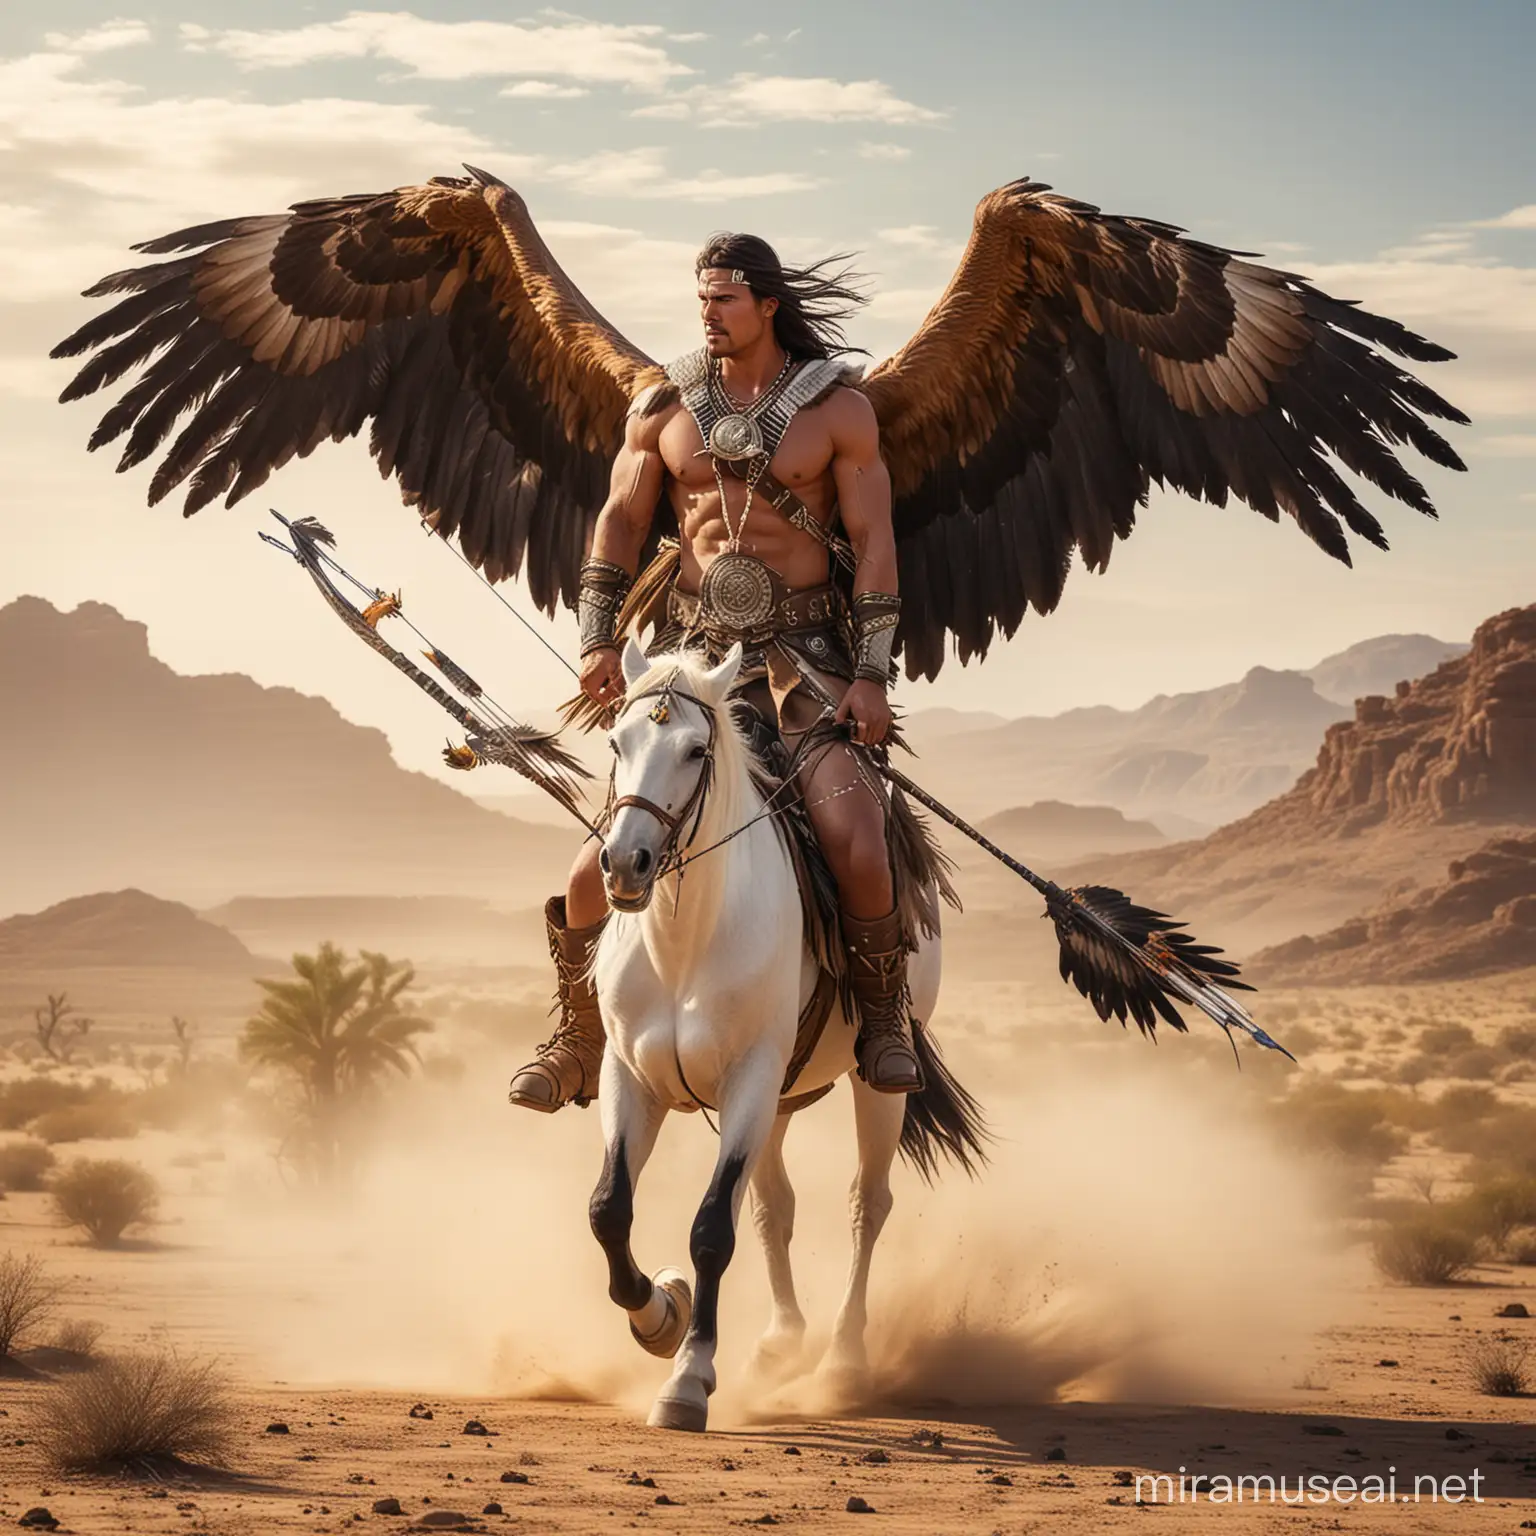 Guerrero apache alto musculoso guapo con alas grandes largas de aguila en medio del desierto con arco y flecha y de fondo búfalos corriendo y una gigantesca aguila real y un hermoso caballo blanco 